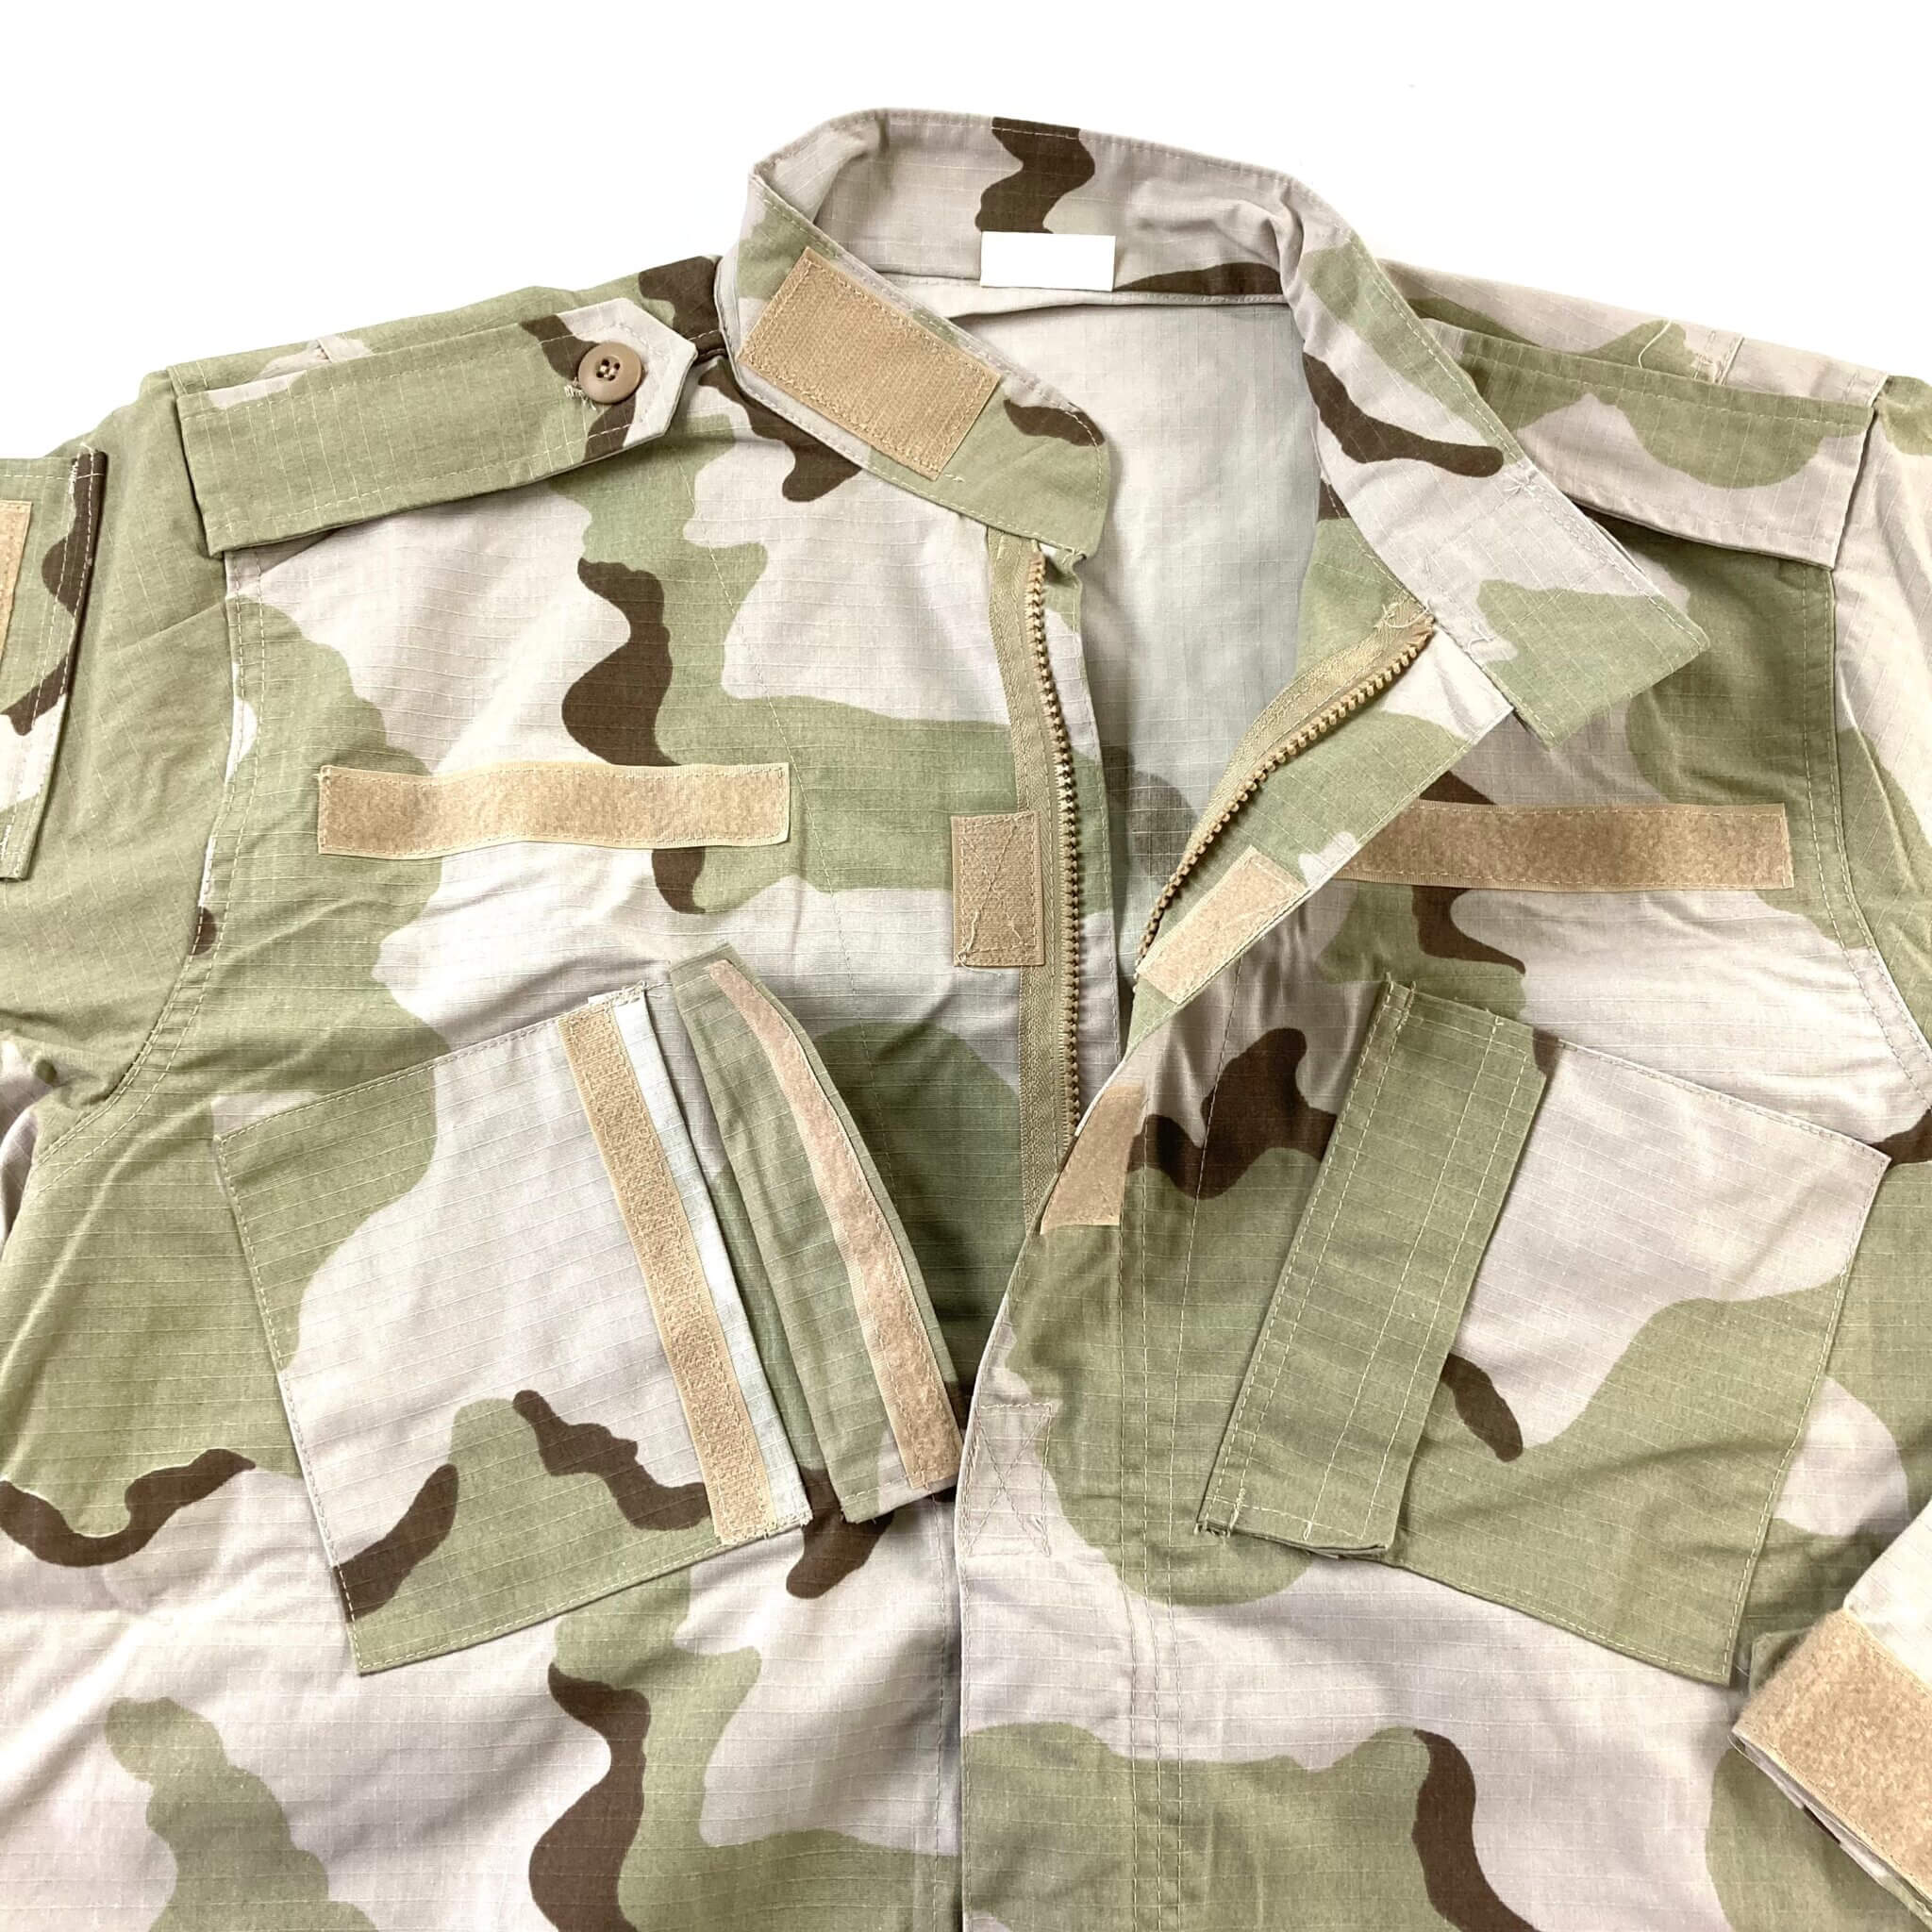 DCU Raid Mod Uniform Sets - Venture Surplus